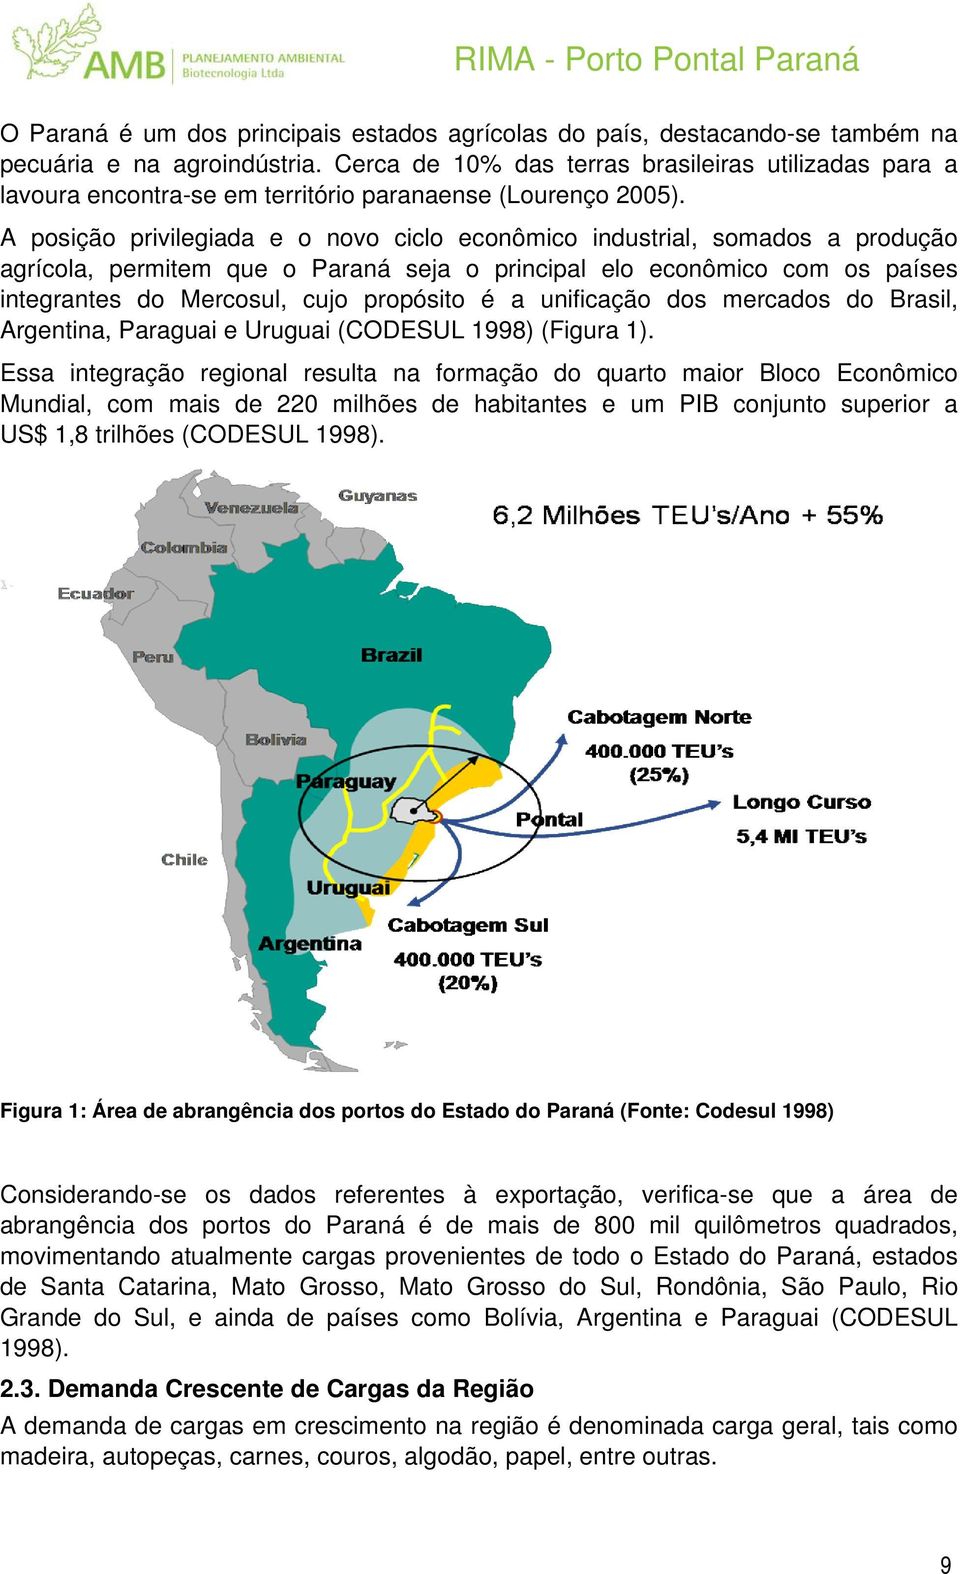 A posição privilegiada e o novo ciclo econômico industrial, somados a produção agrícola, permitem que o Paraná seja o principal elo econômico com os países integrantes do Mercosul, cujo propósito é a